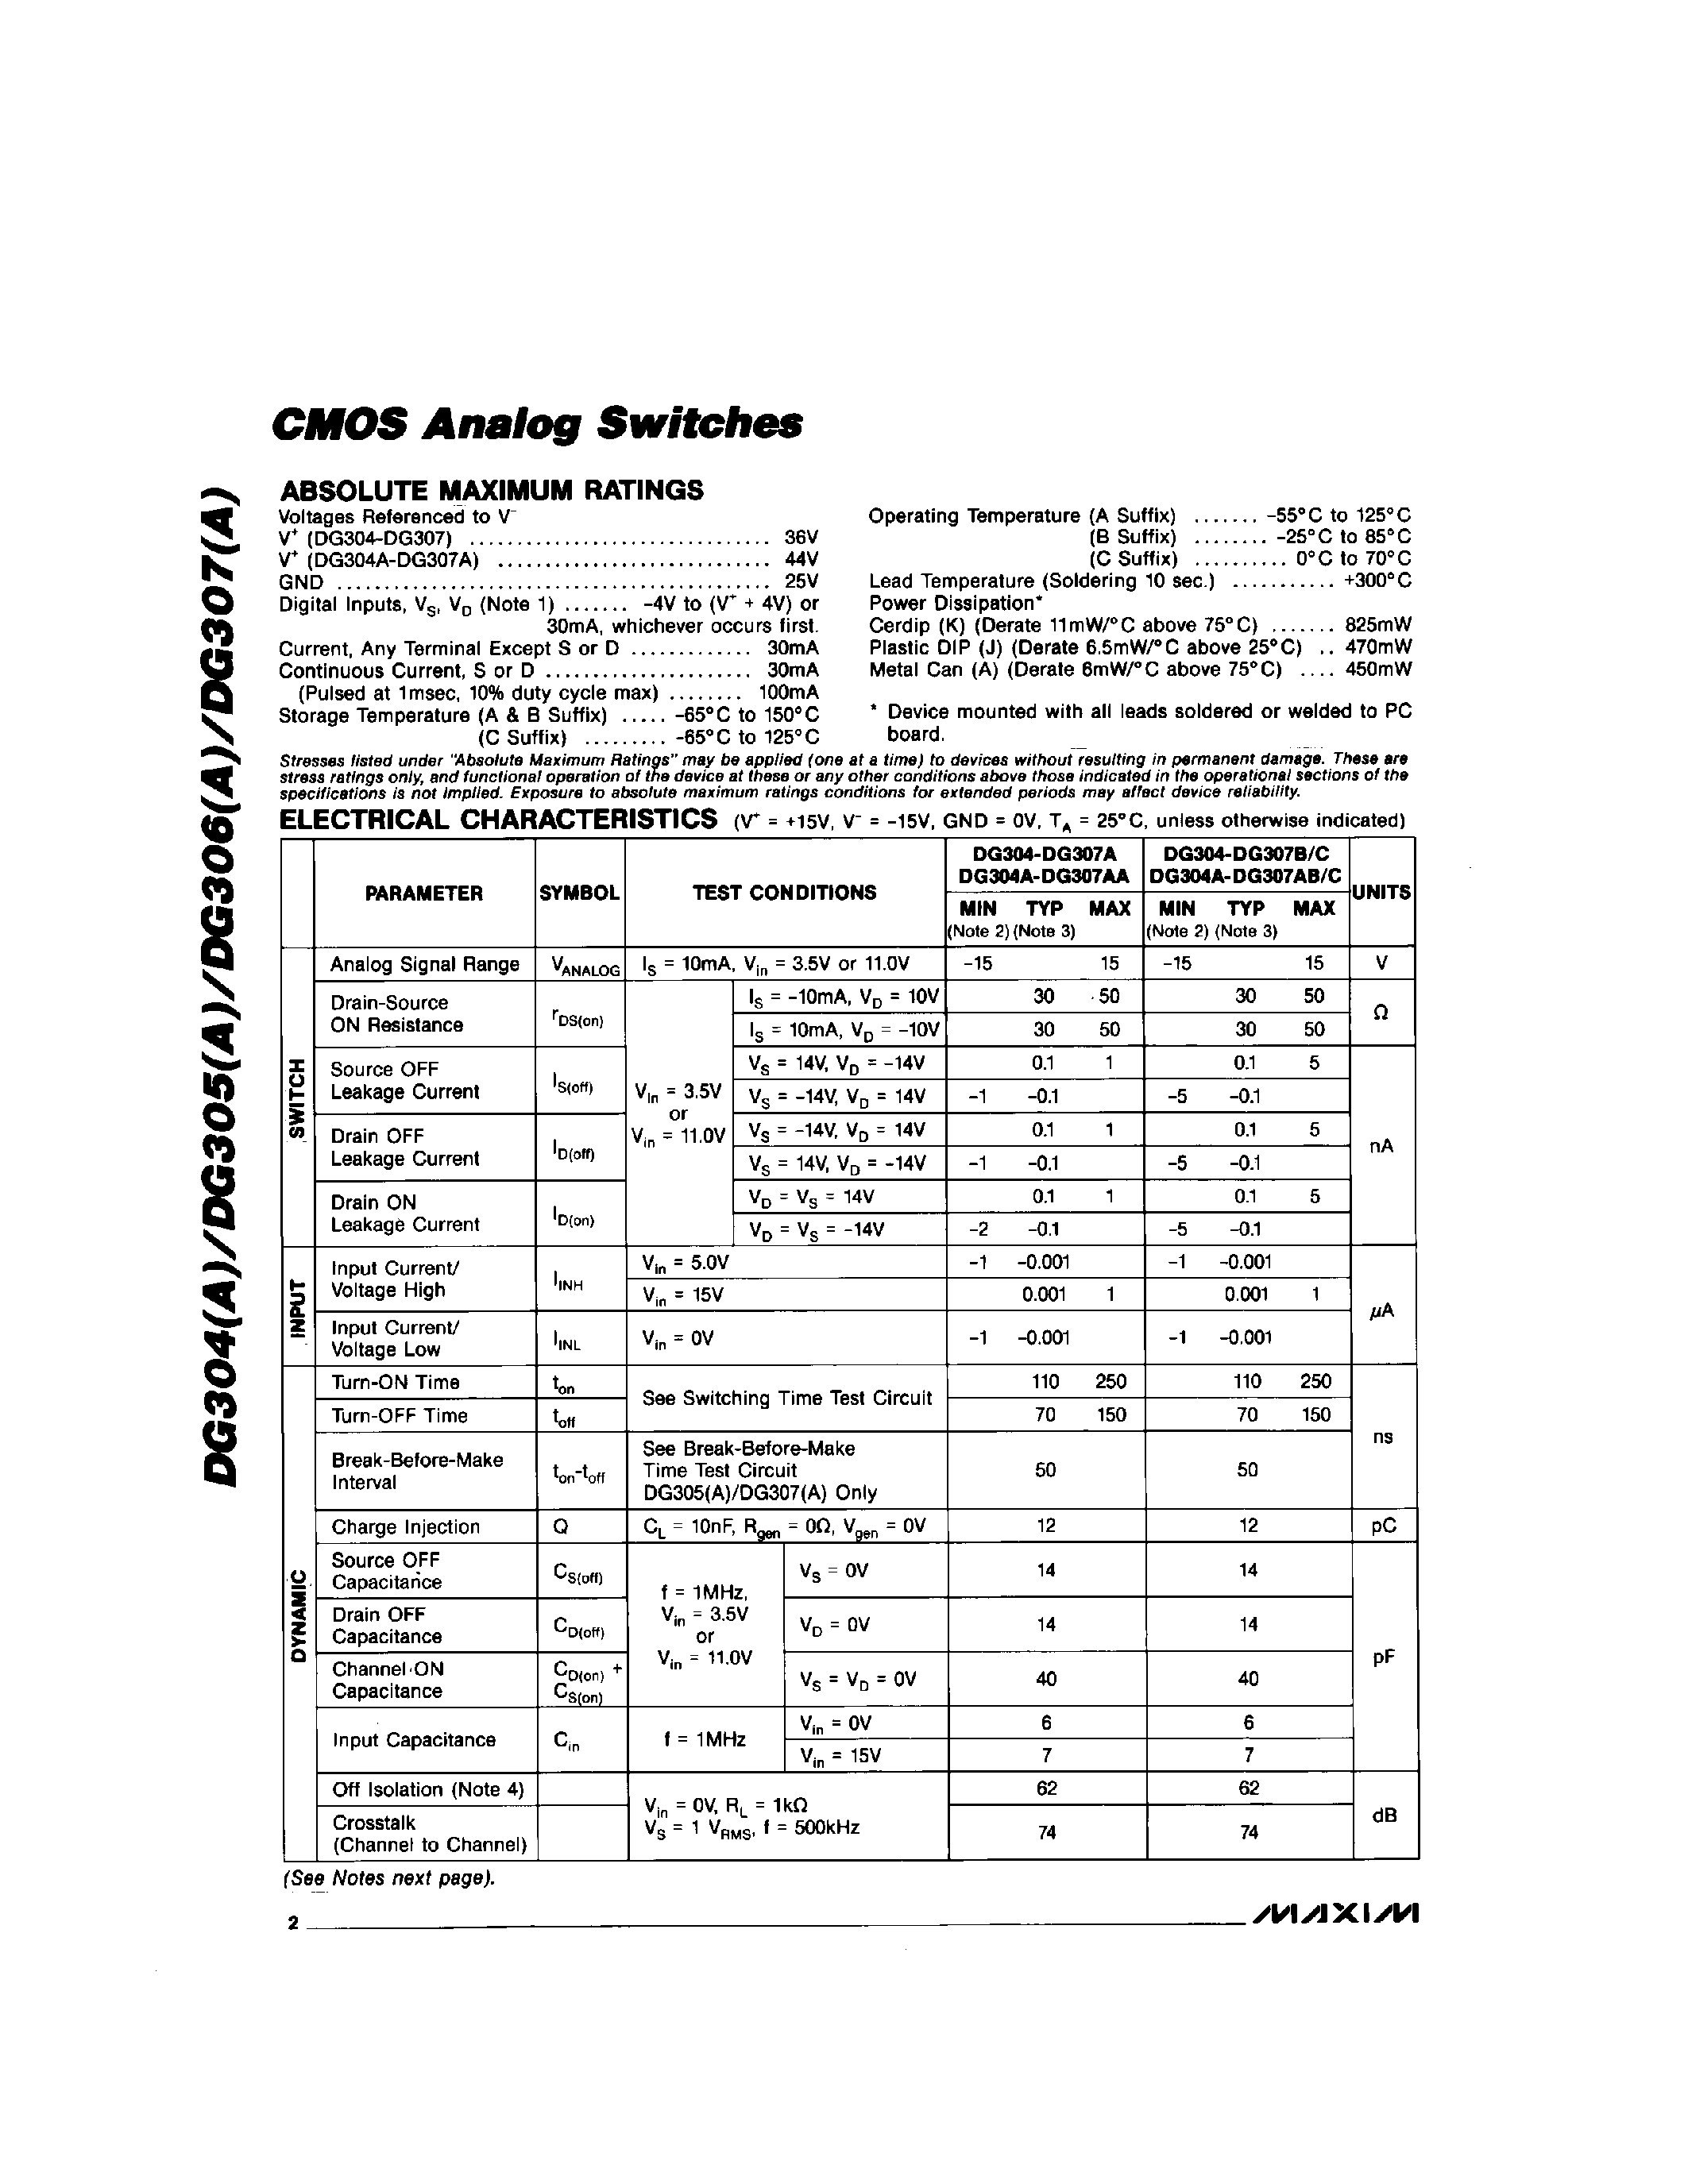 Datasheet DG304C/D - CMOS Analog Switchs page 2